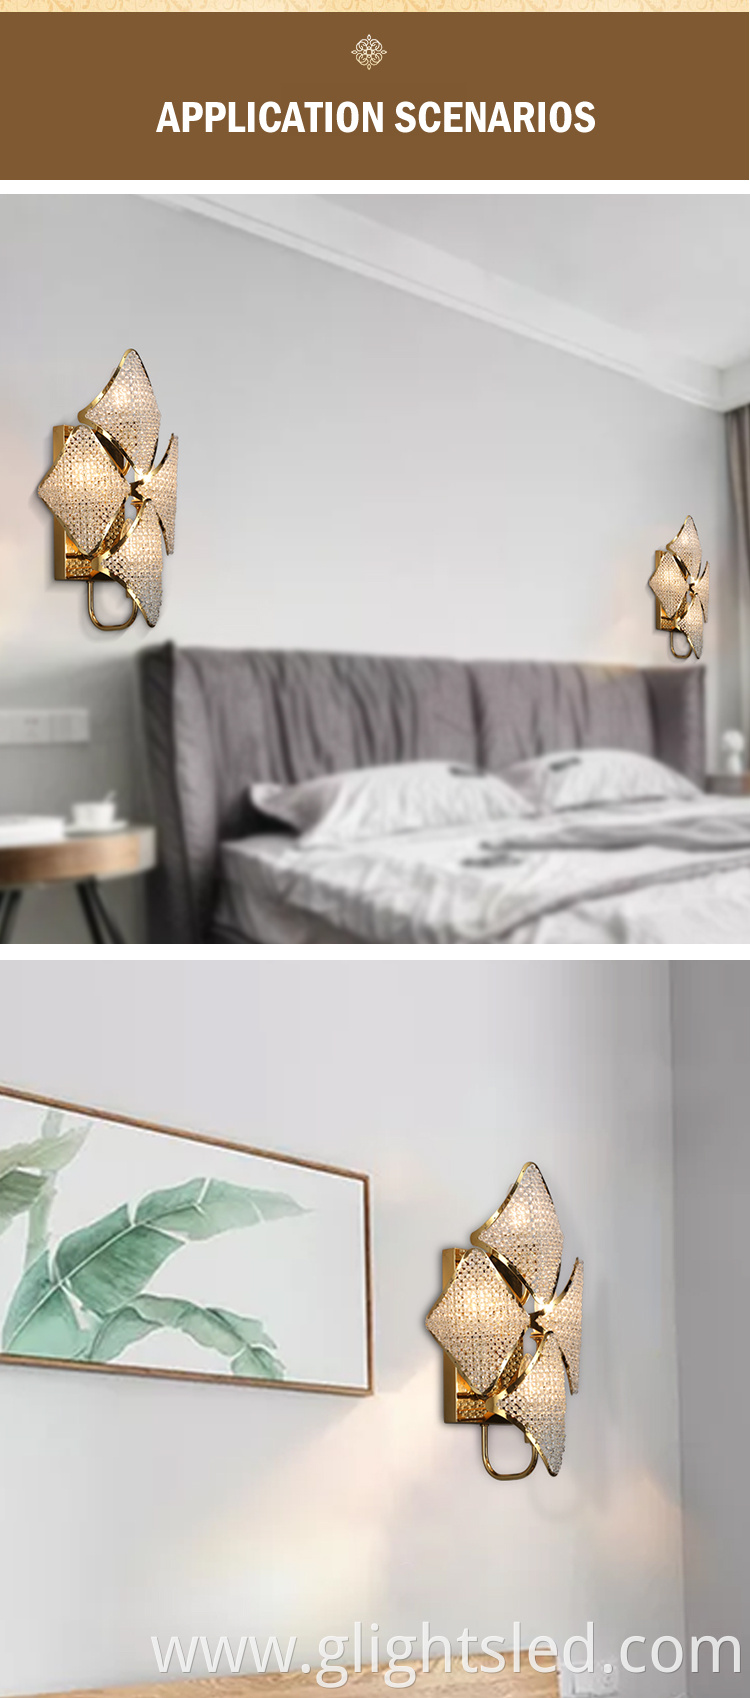 G-Lights Hot Selling Modern Designer Indoor Decorative Bedroom Led Crystal Wall Light